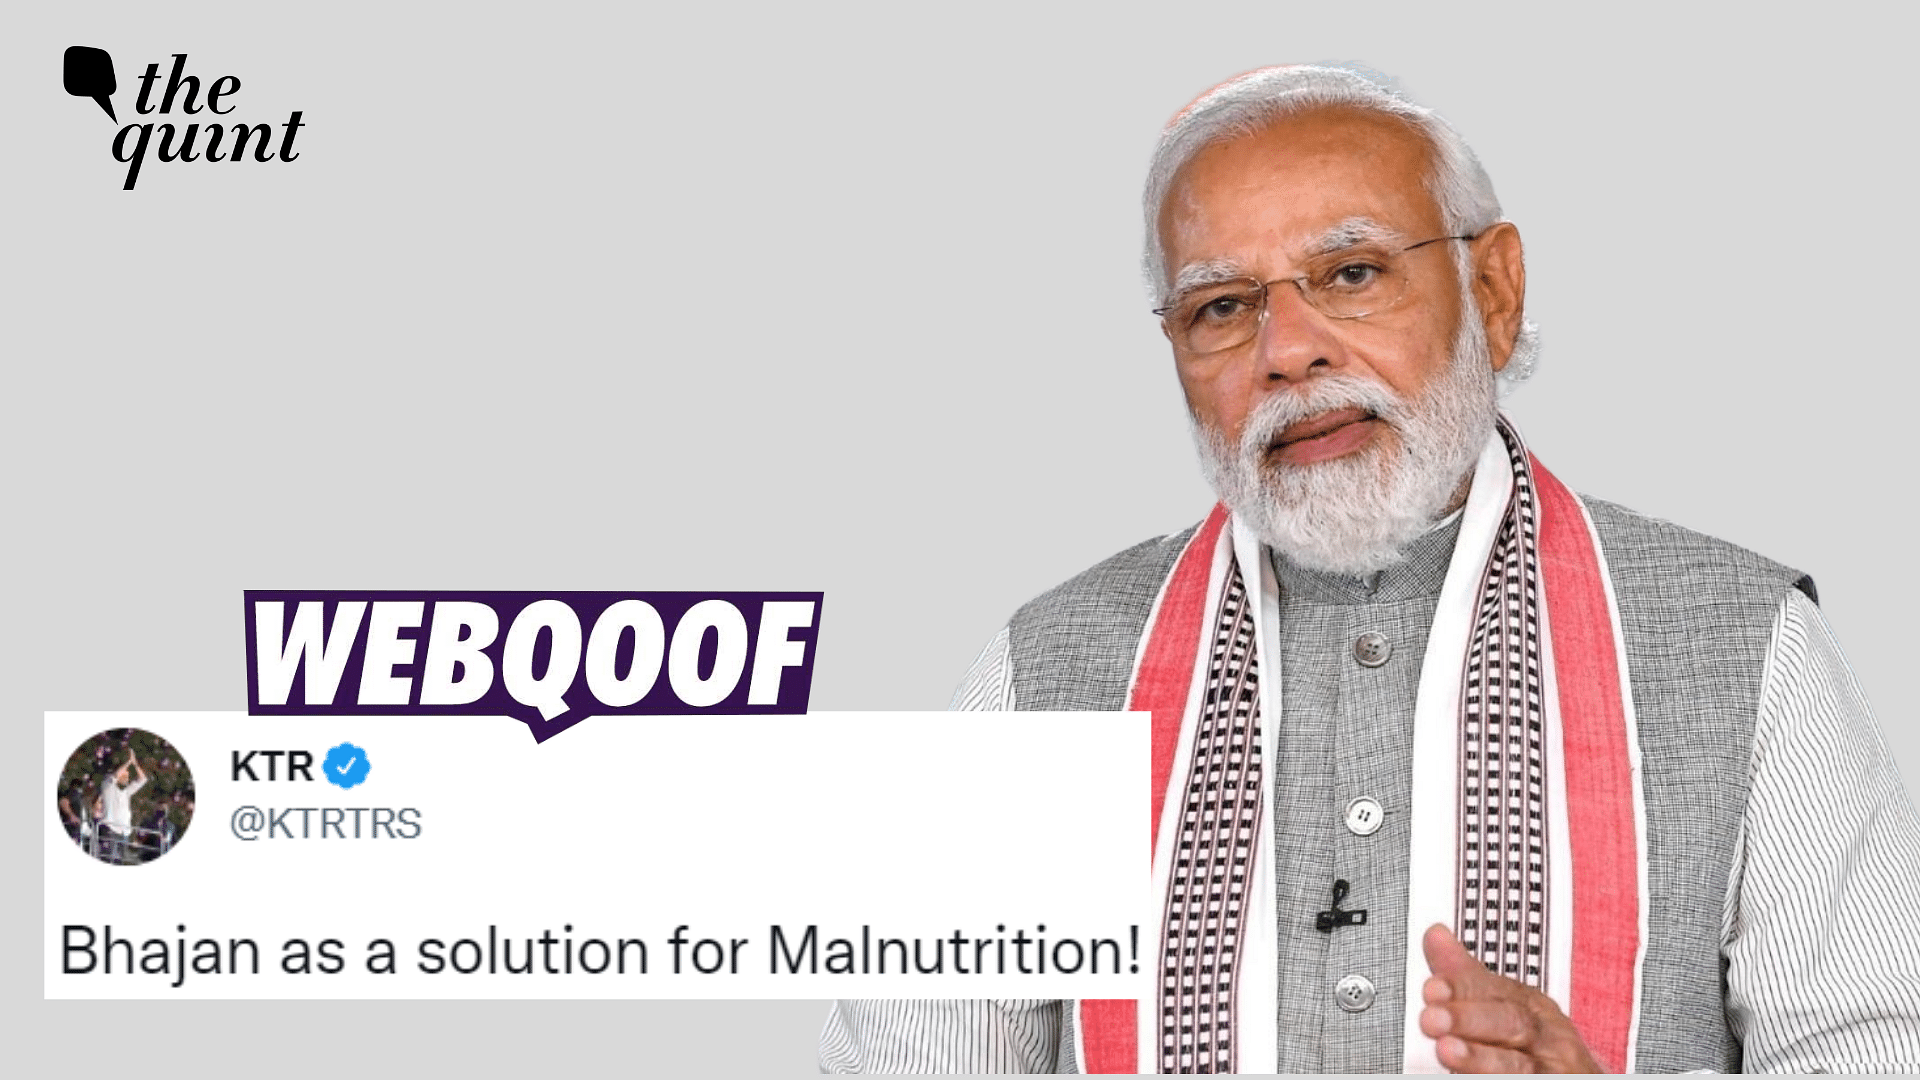 <div class="paragraphs"><p>Fact-check: PM Modi's statement about malnutrition was misinterpreted.</p></div>